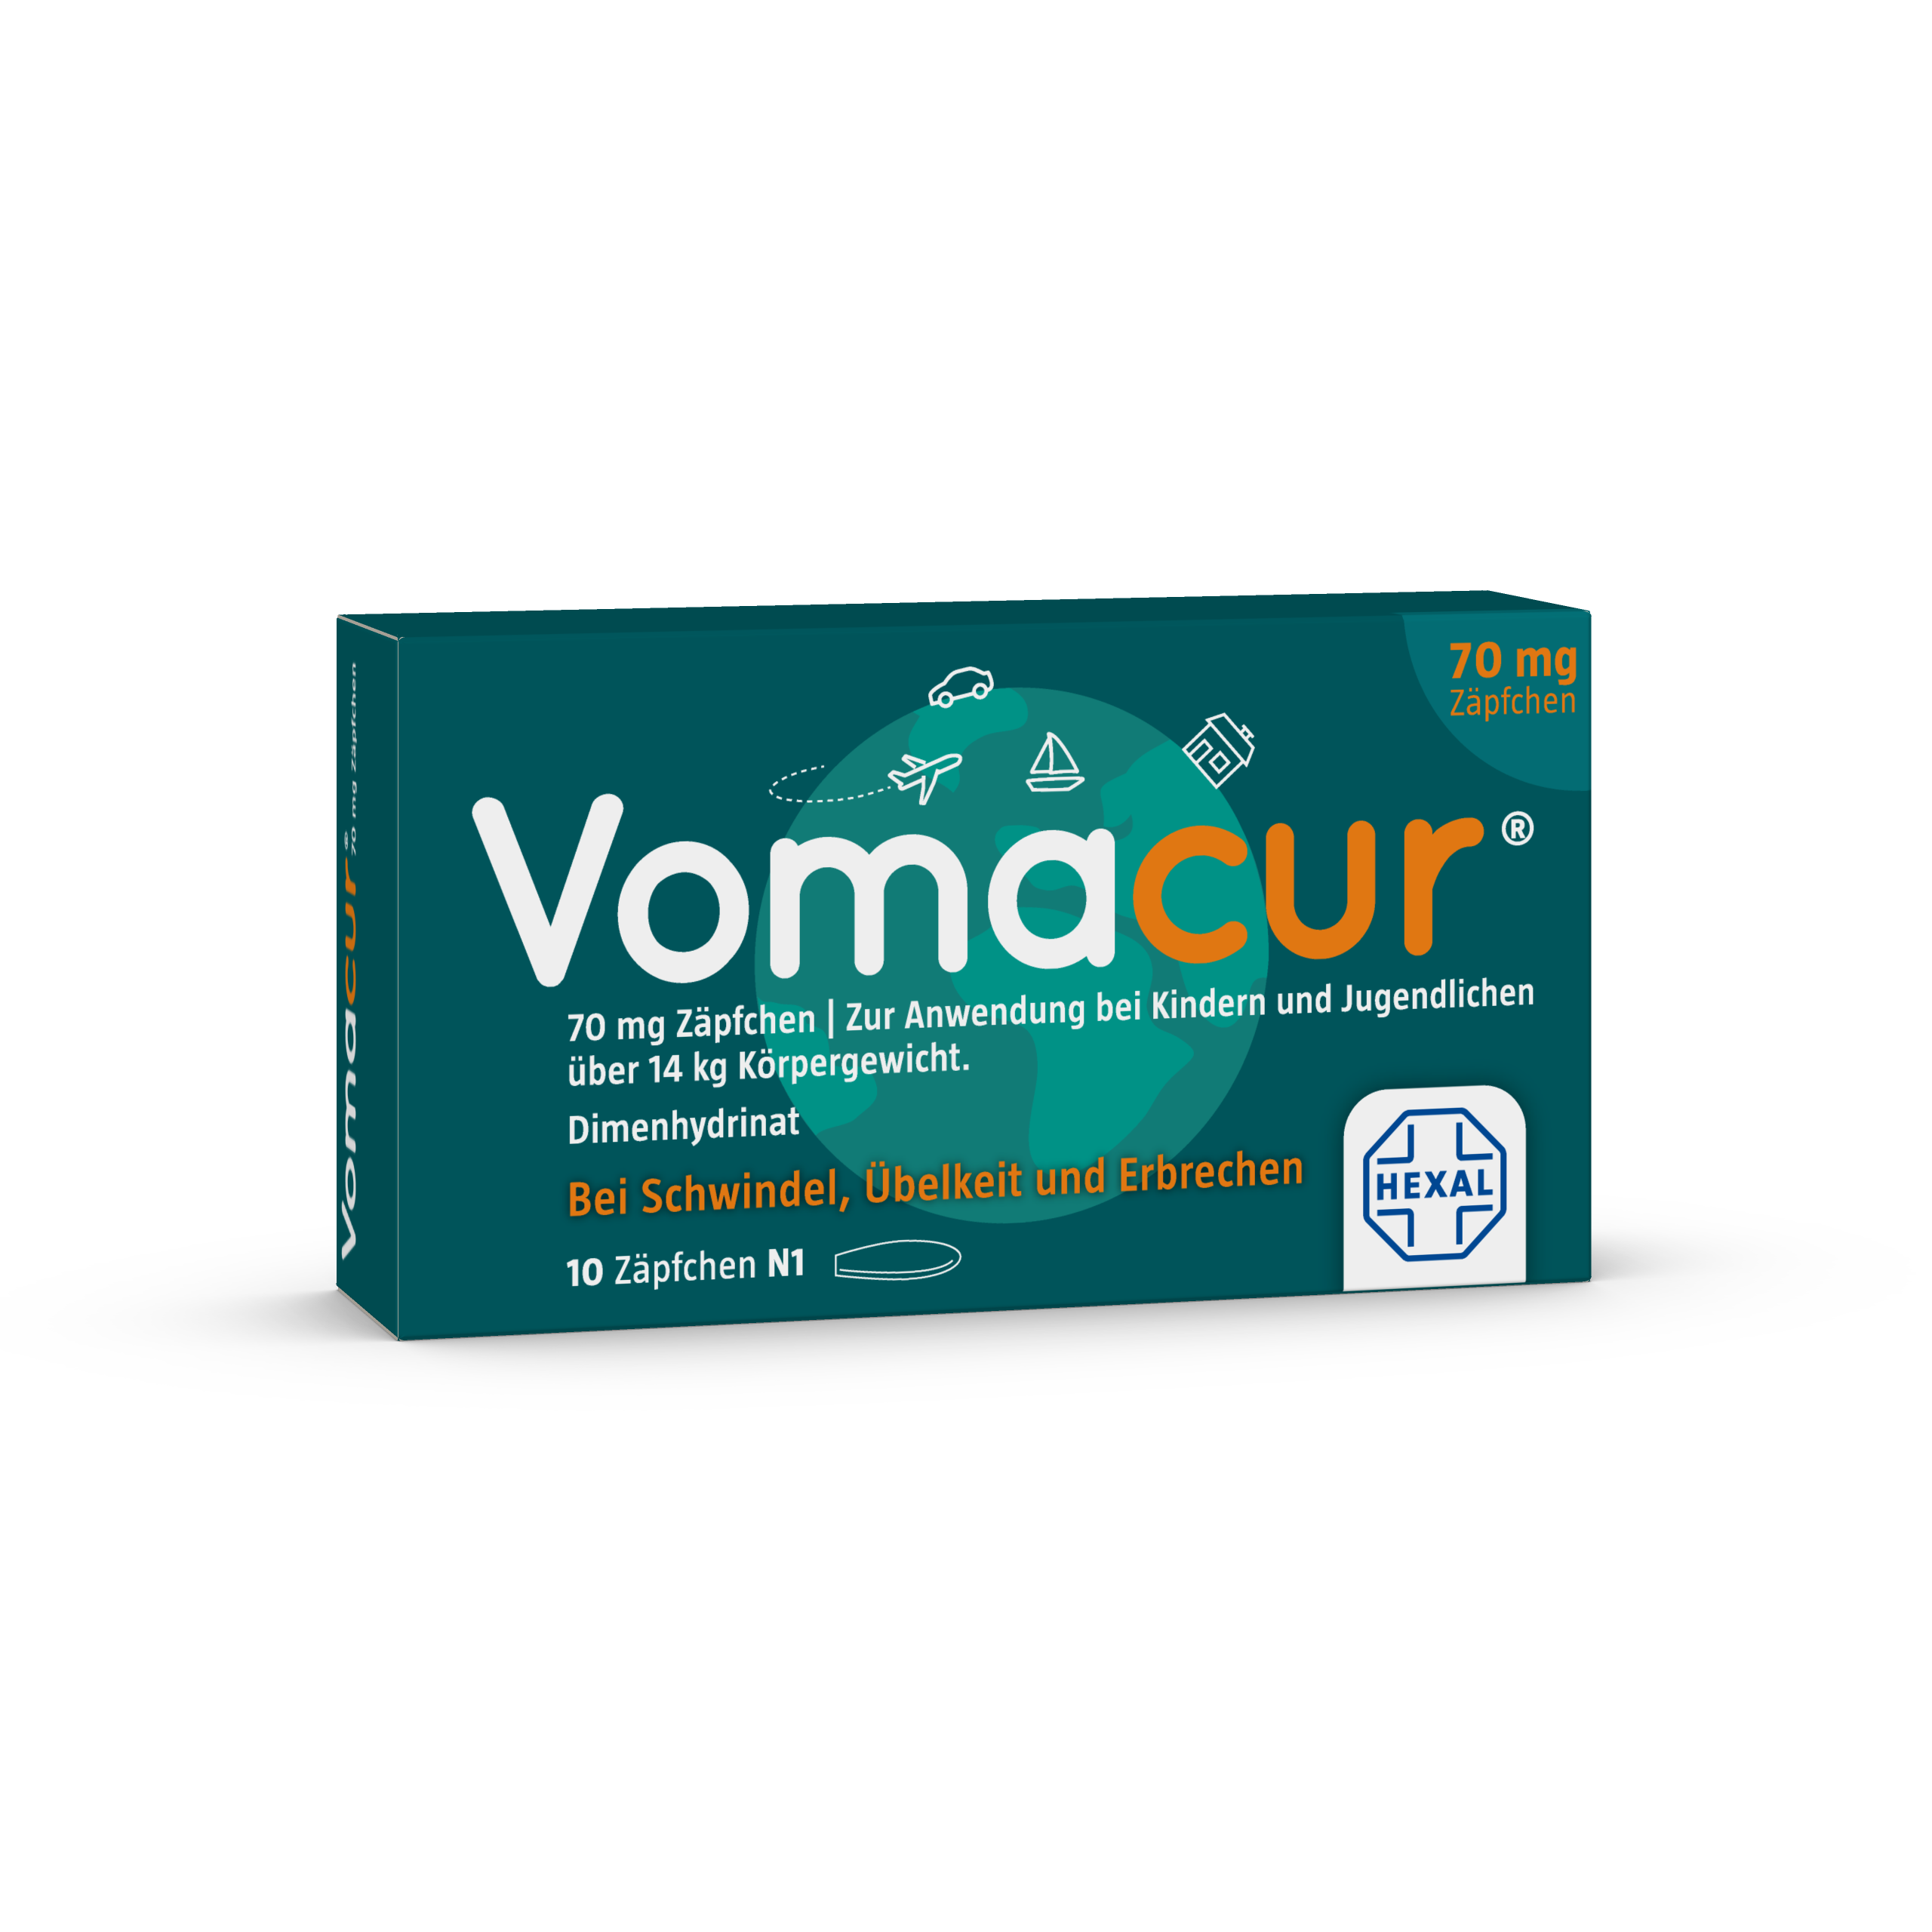 Vomacur 70 mg Zäpfchen (10 Stk)